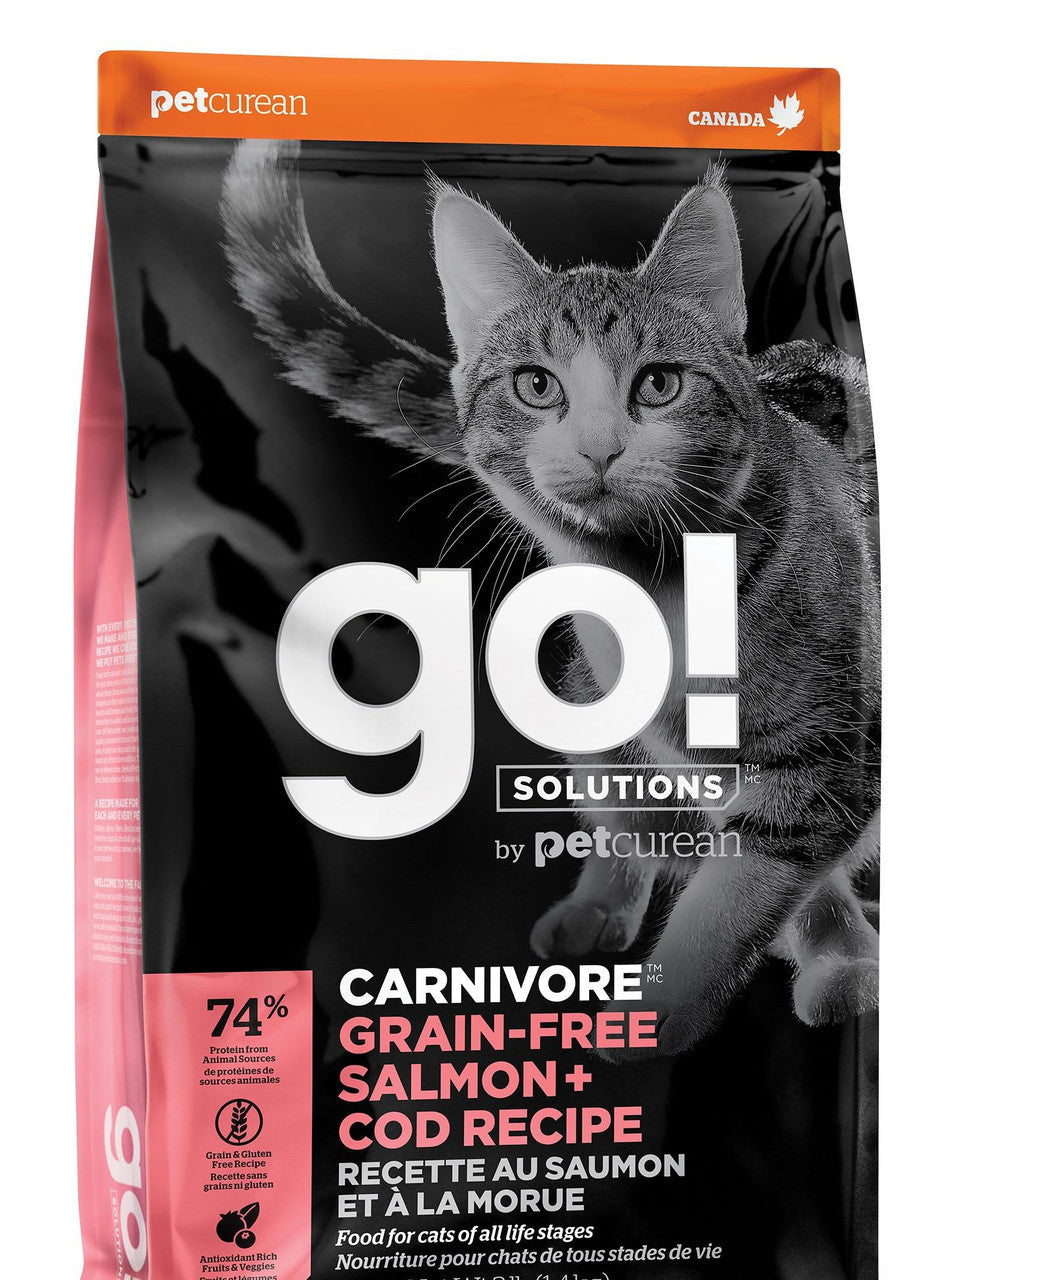 Petcurean GO! CARNIVORE Grain Free Salmon + Cod Recipe for cats 8lb {L-1}152247 815260005340